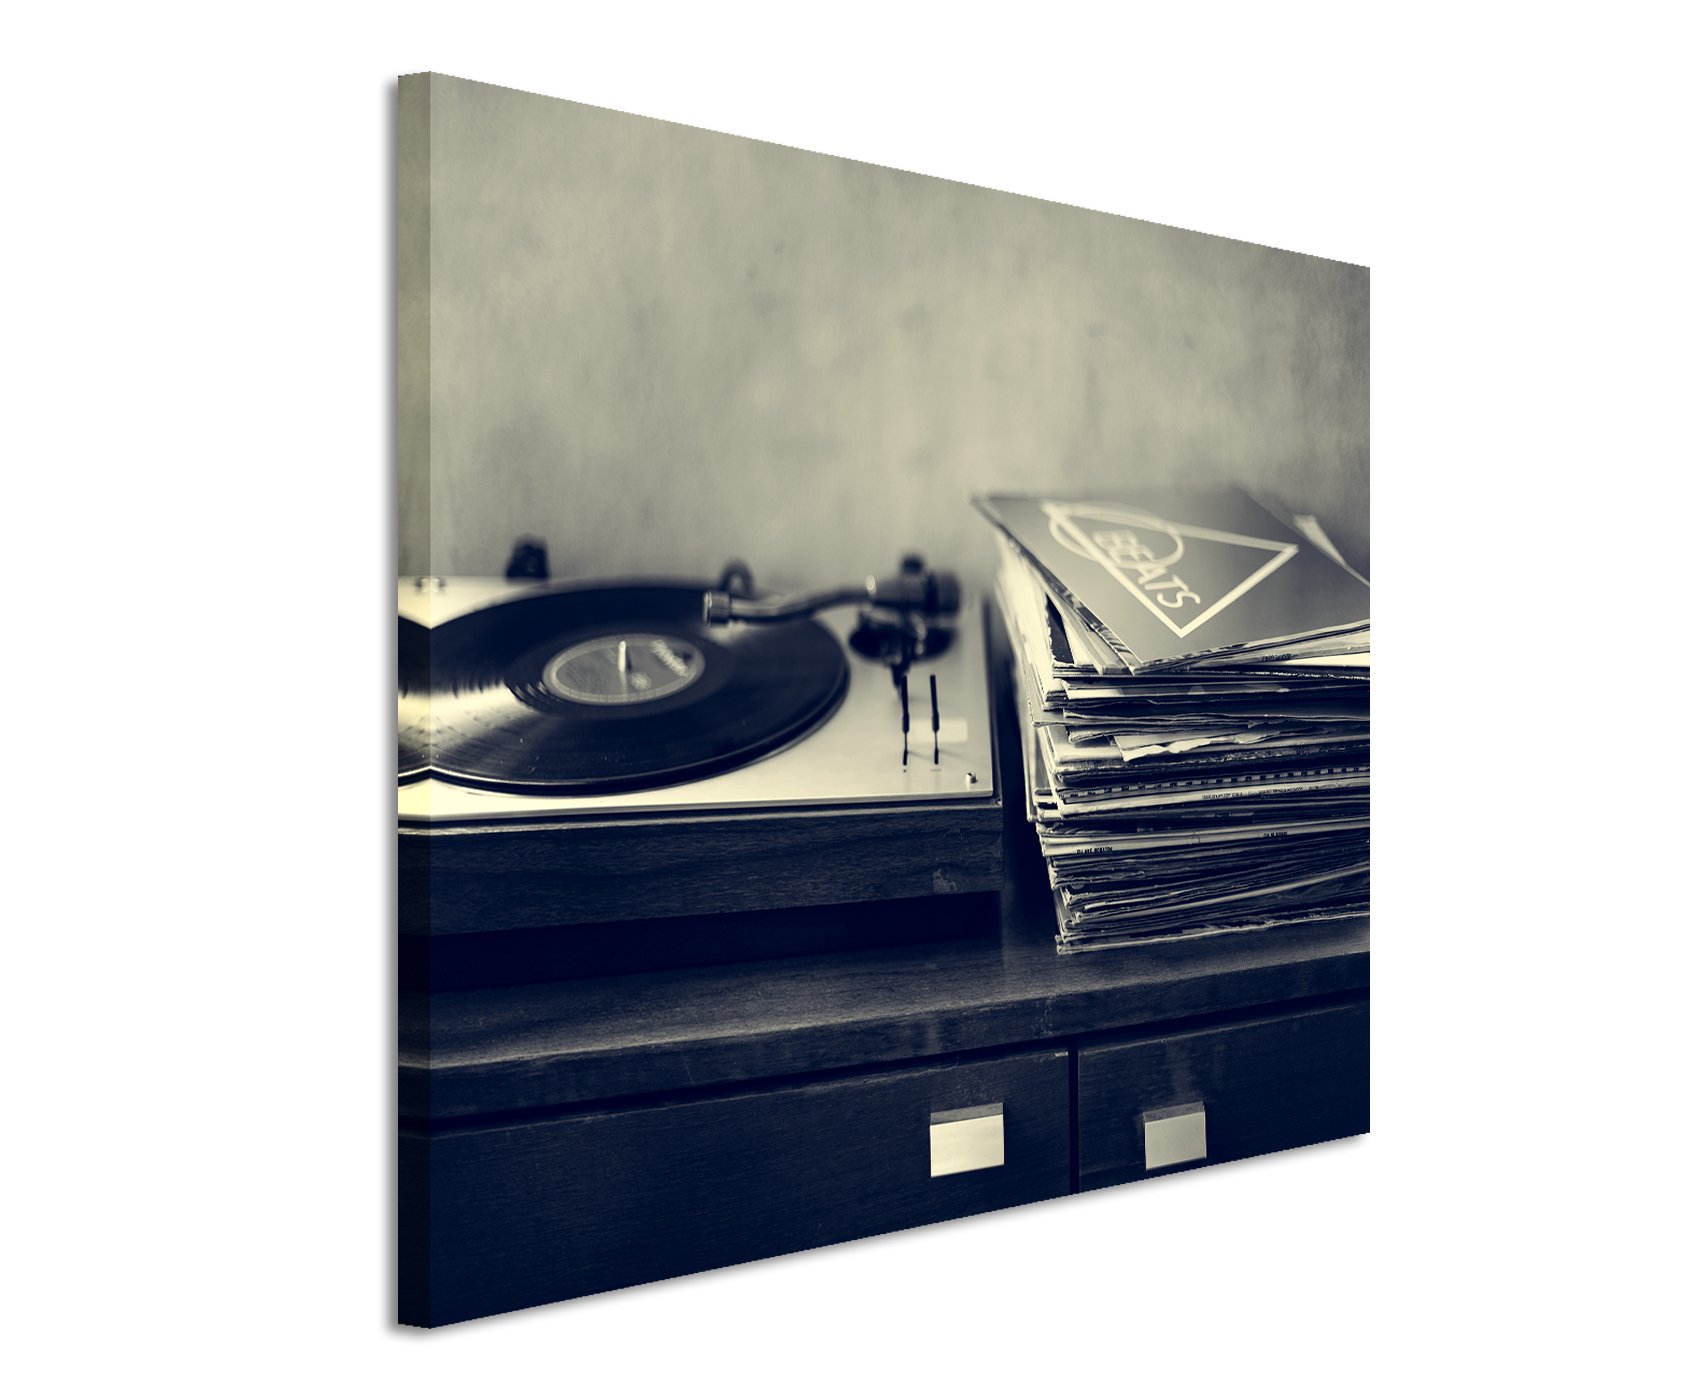 Unique Fotoleinwand 120x80cm Kunstbilder – Schallplattenspieler und Vinyl schwarz weiß